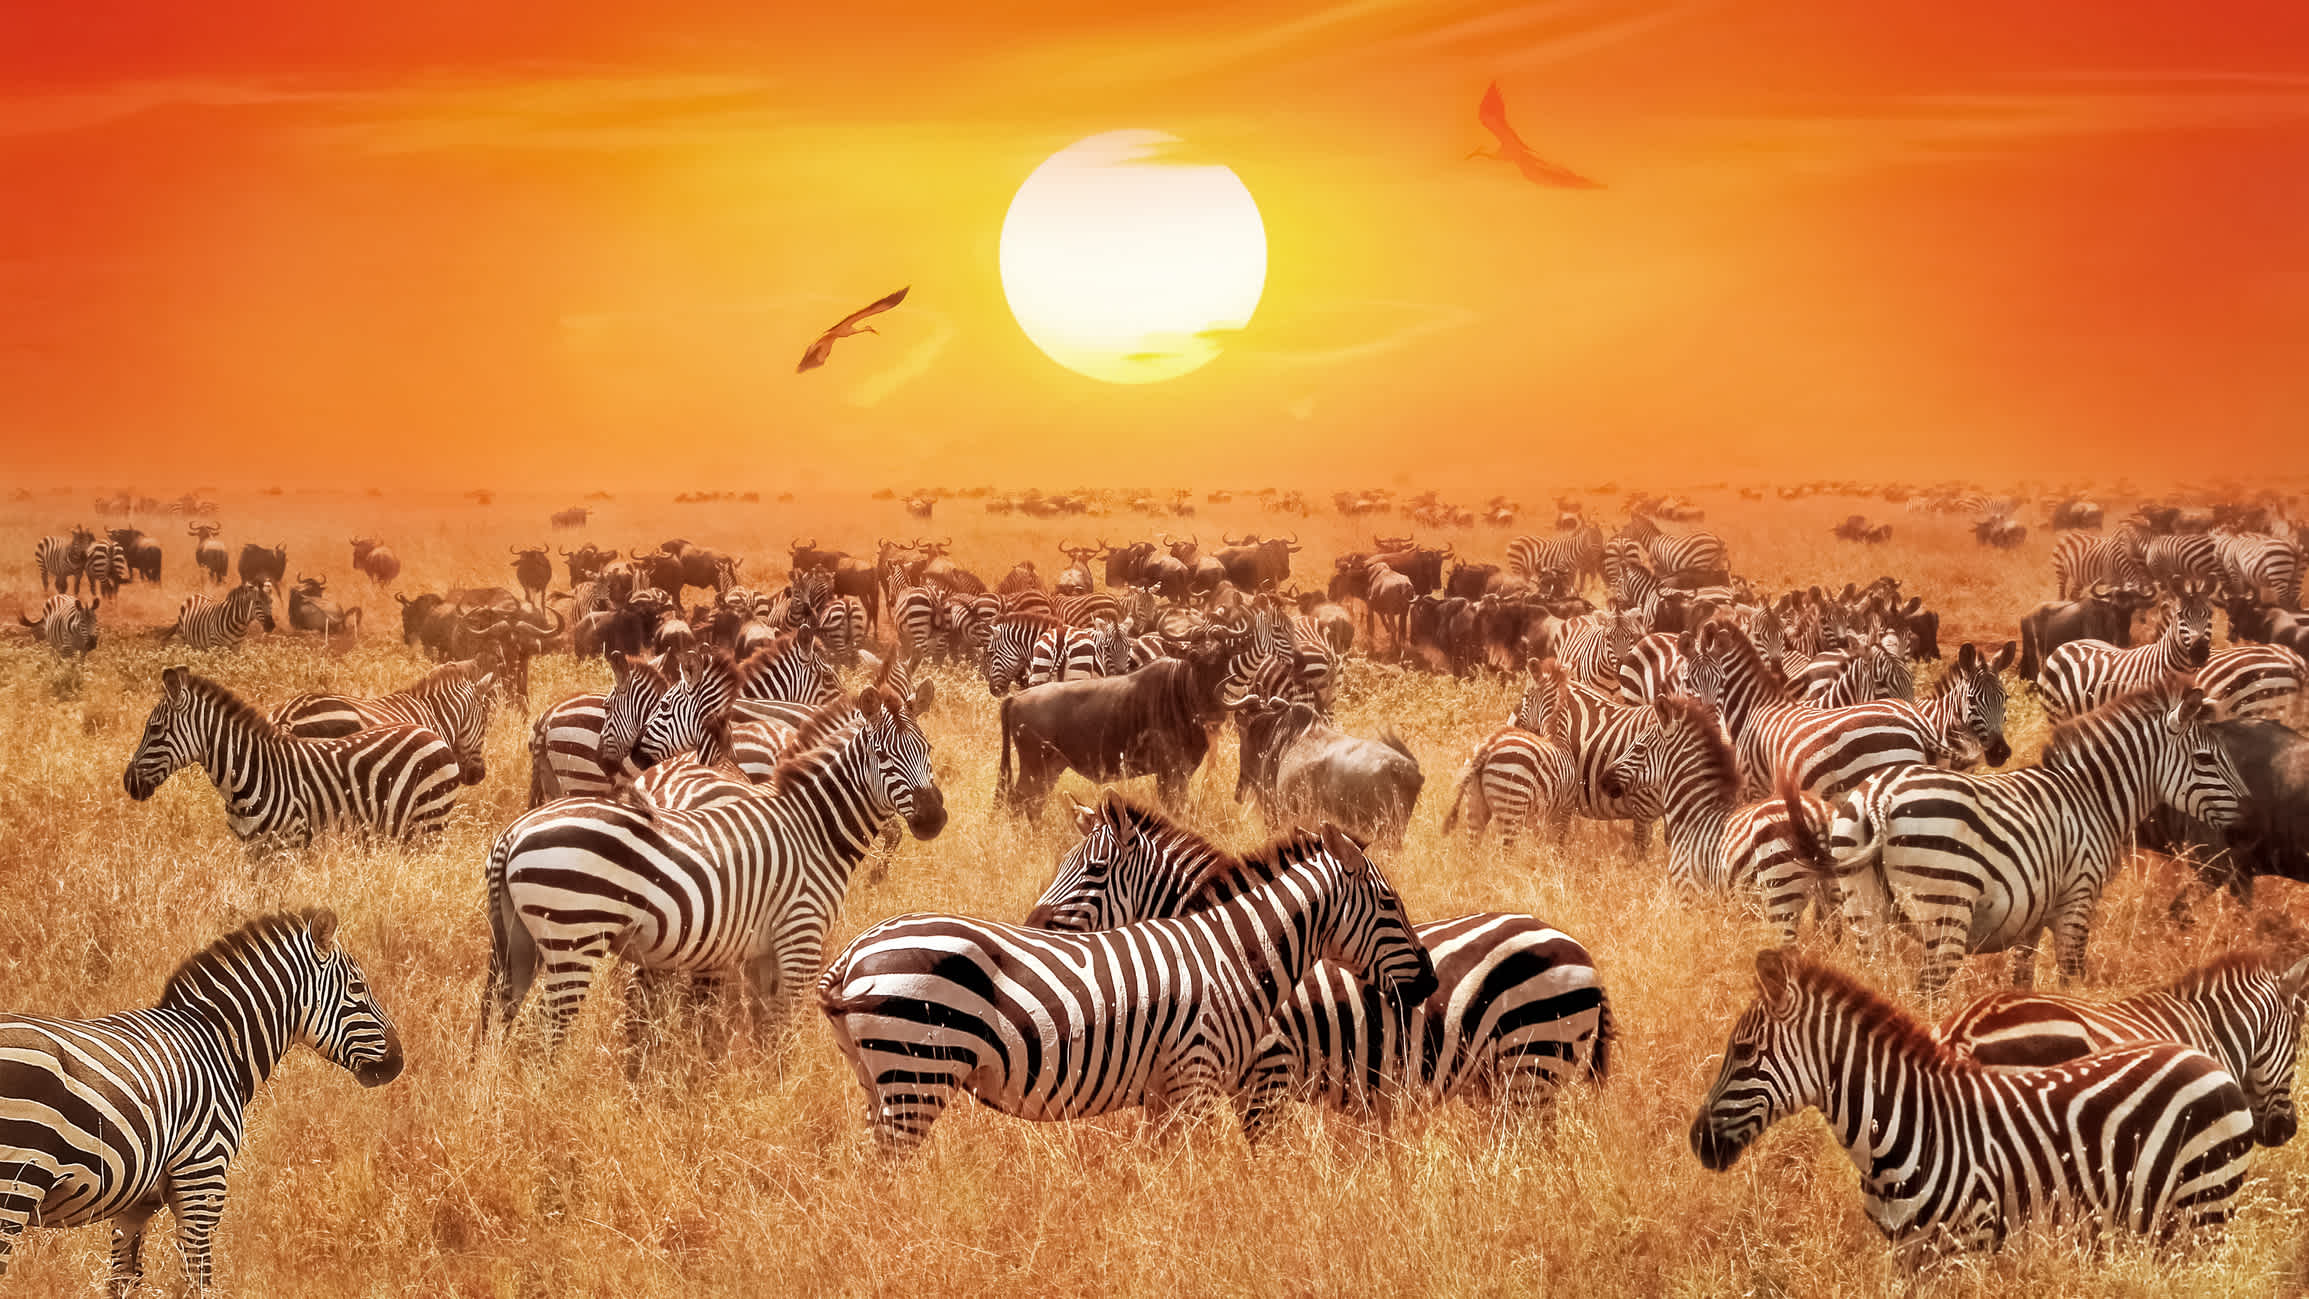 Groupe des wilden Zebras und Antilopen in der afrikanischen Savanne gegen einen wunderschönen Sonnenuntergang orange. Wilde Natur Tansanias. Künstlerische natürlichen afrikanischen Bild.